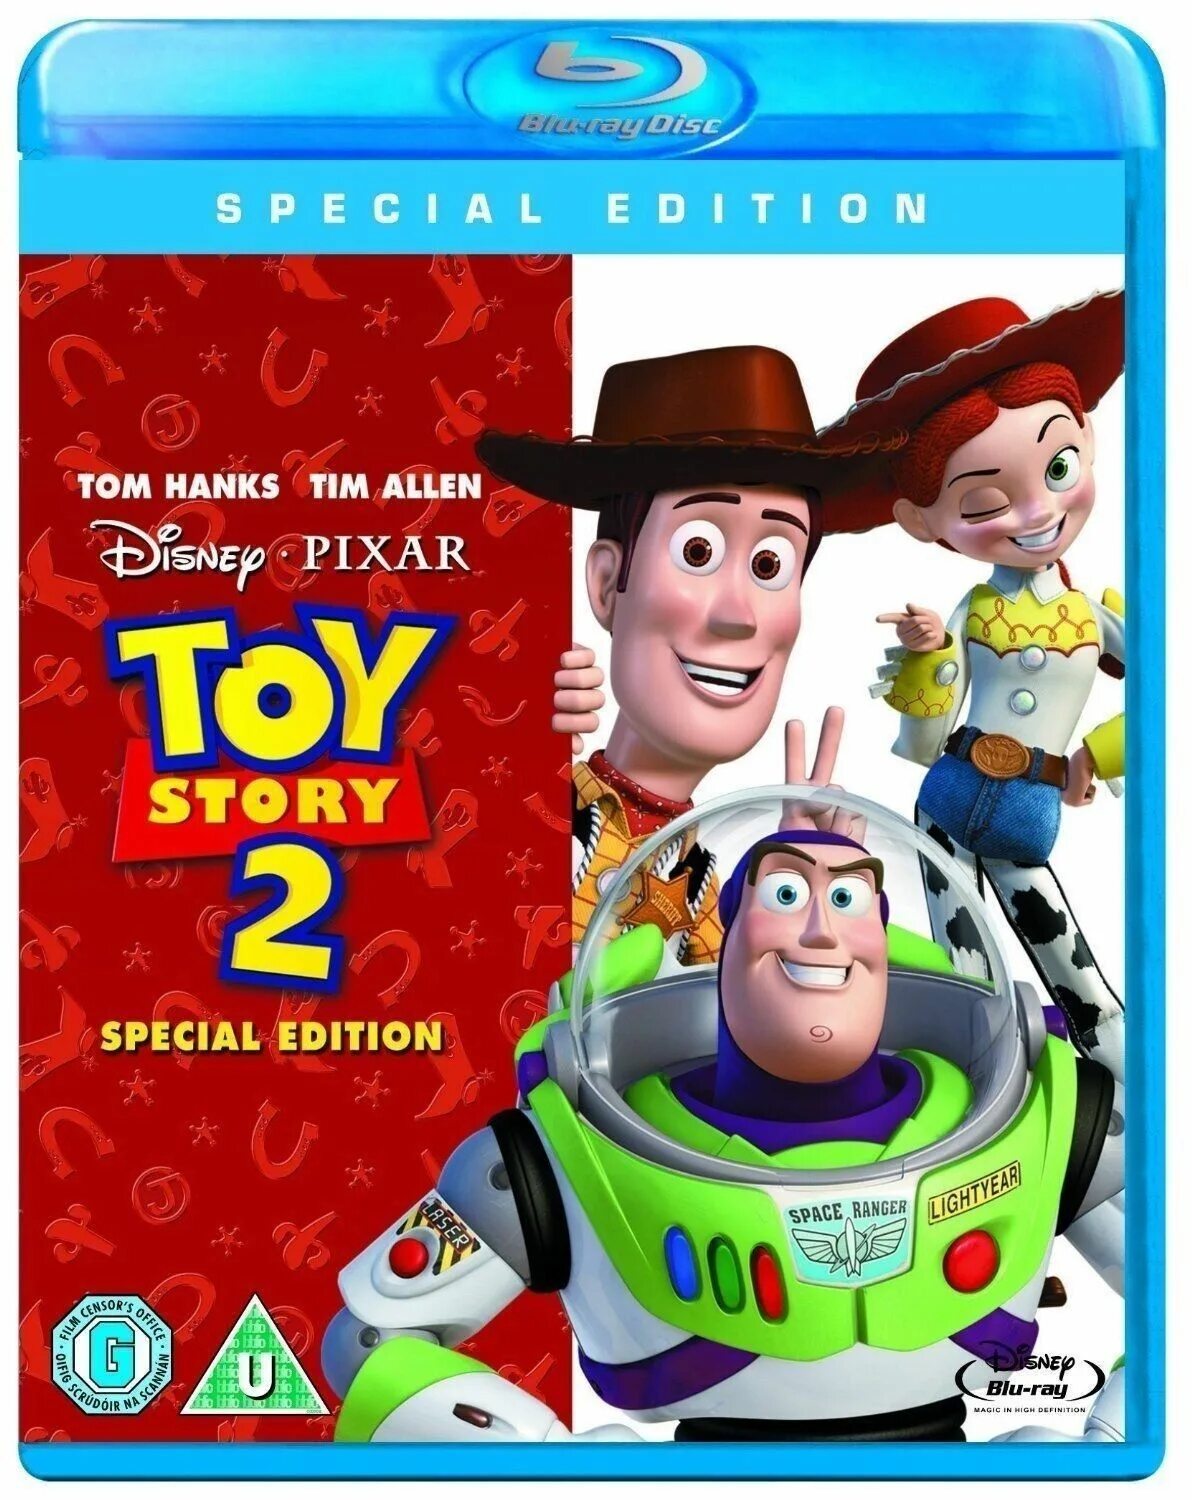 История игрушек 2 диск Blu ray DVD. История игрушек 2. Toy story DVD Blu ray. Toy story 2 1999 Blu ray. Complete the toys